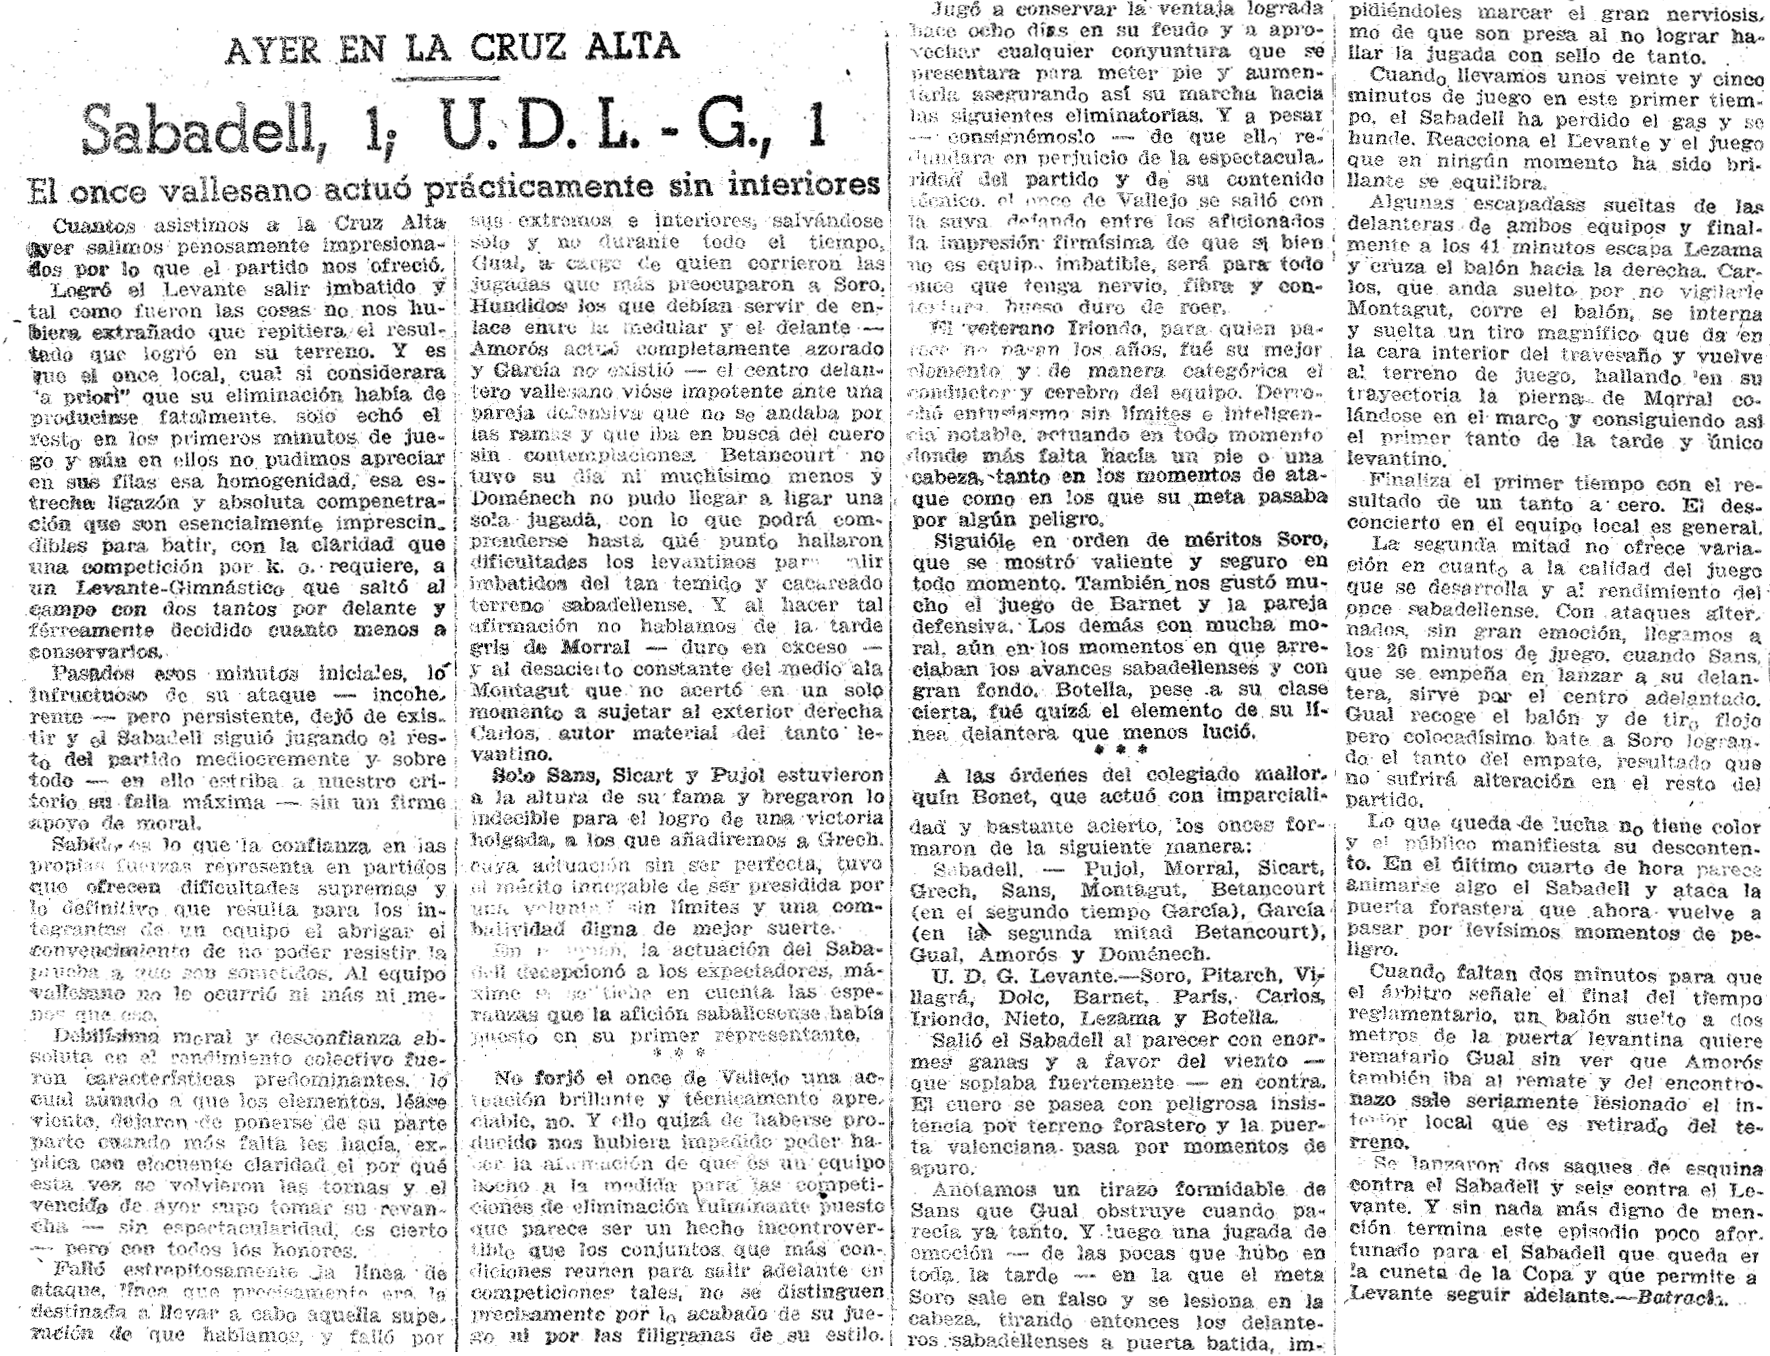 1941.03.30 (30 марта 1941), Сабадель - Леванте, 1-1 (2).png